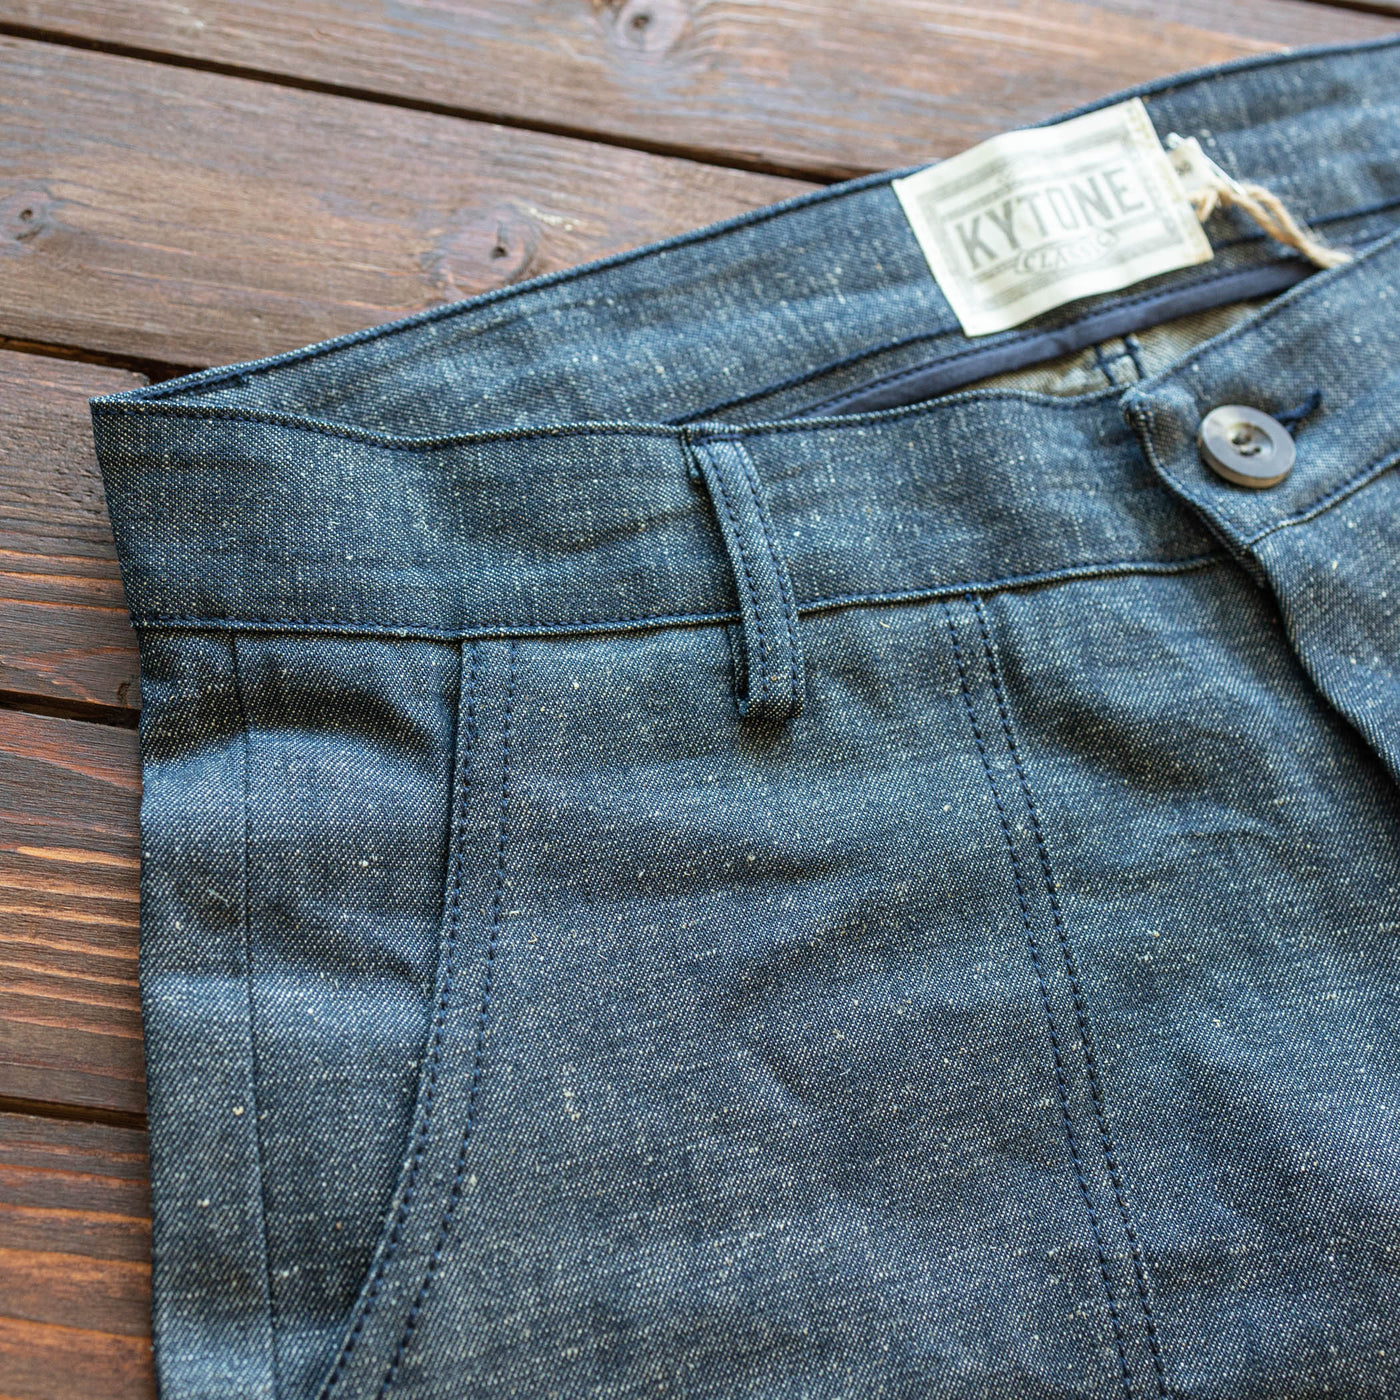 Kytone - Denim Shorts - Blue selvedge